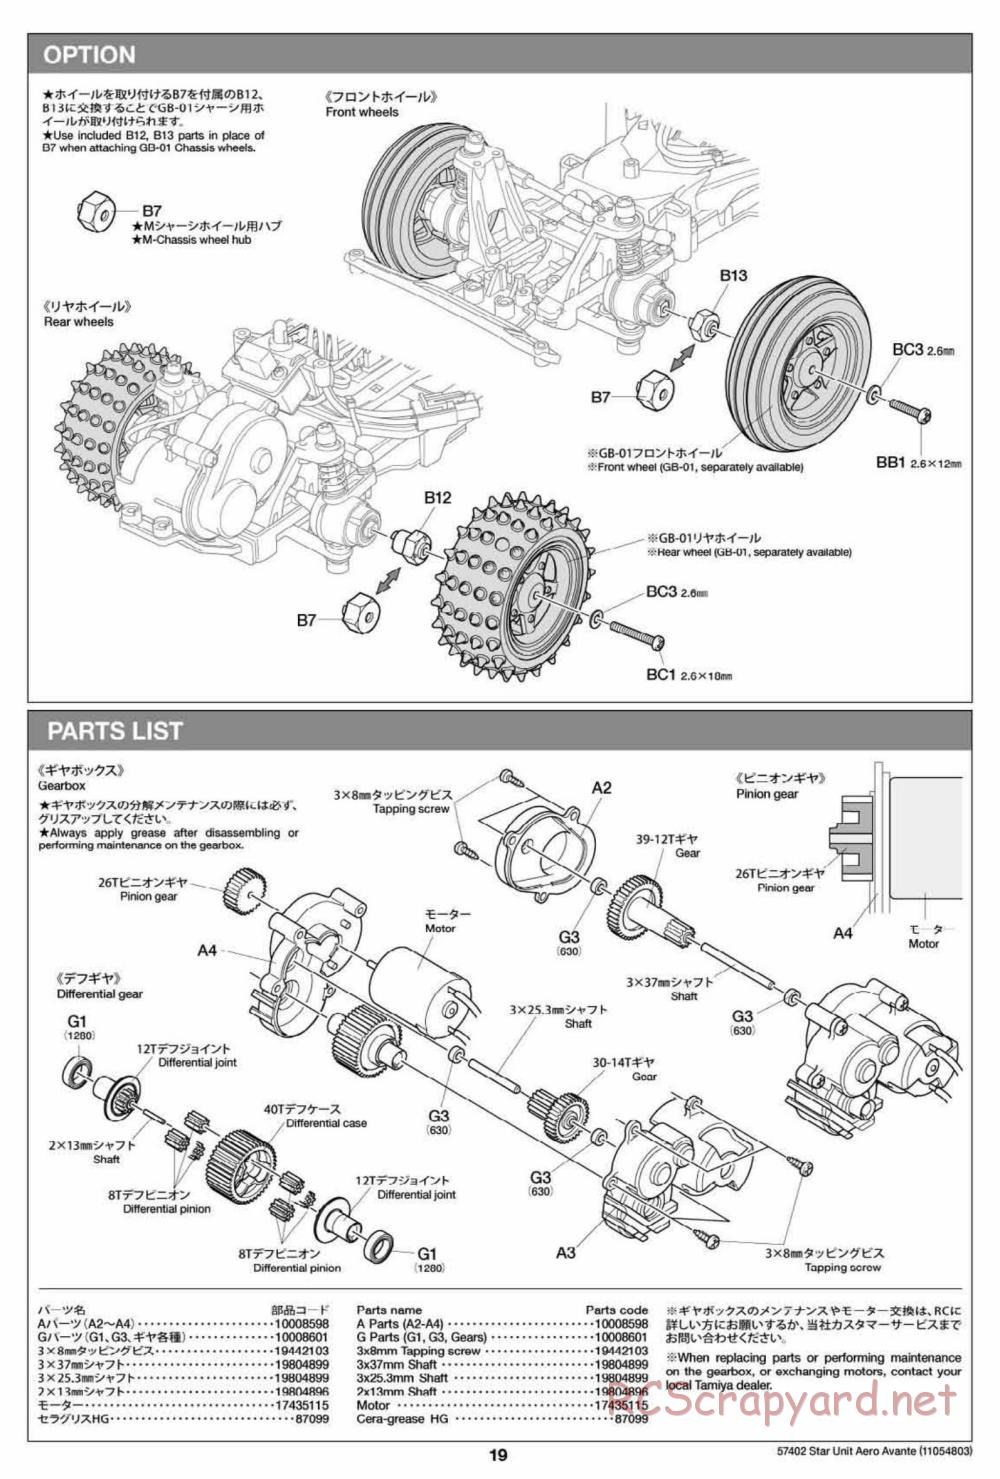 Tamiya - Aero Avante Chassis - Manual - Page 19